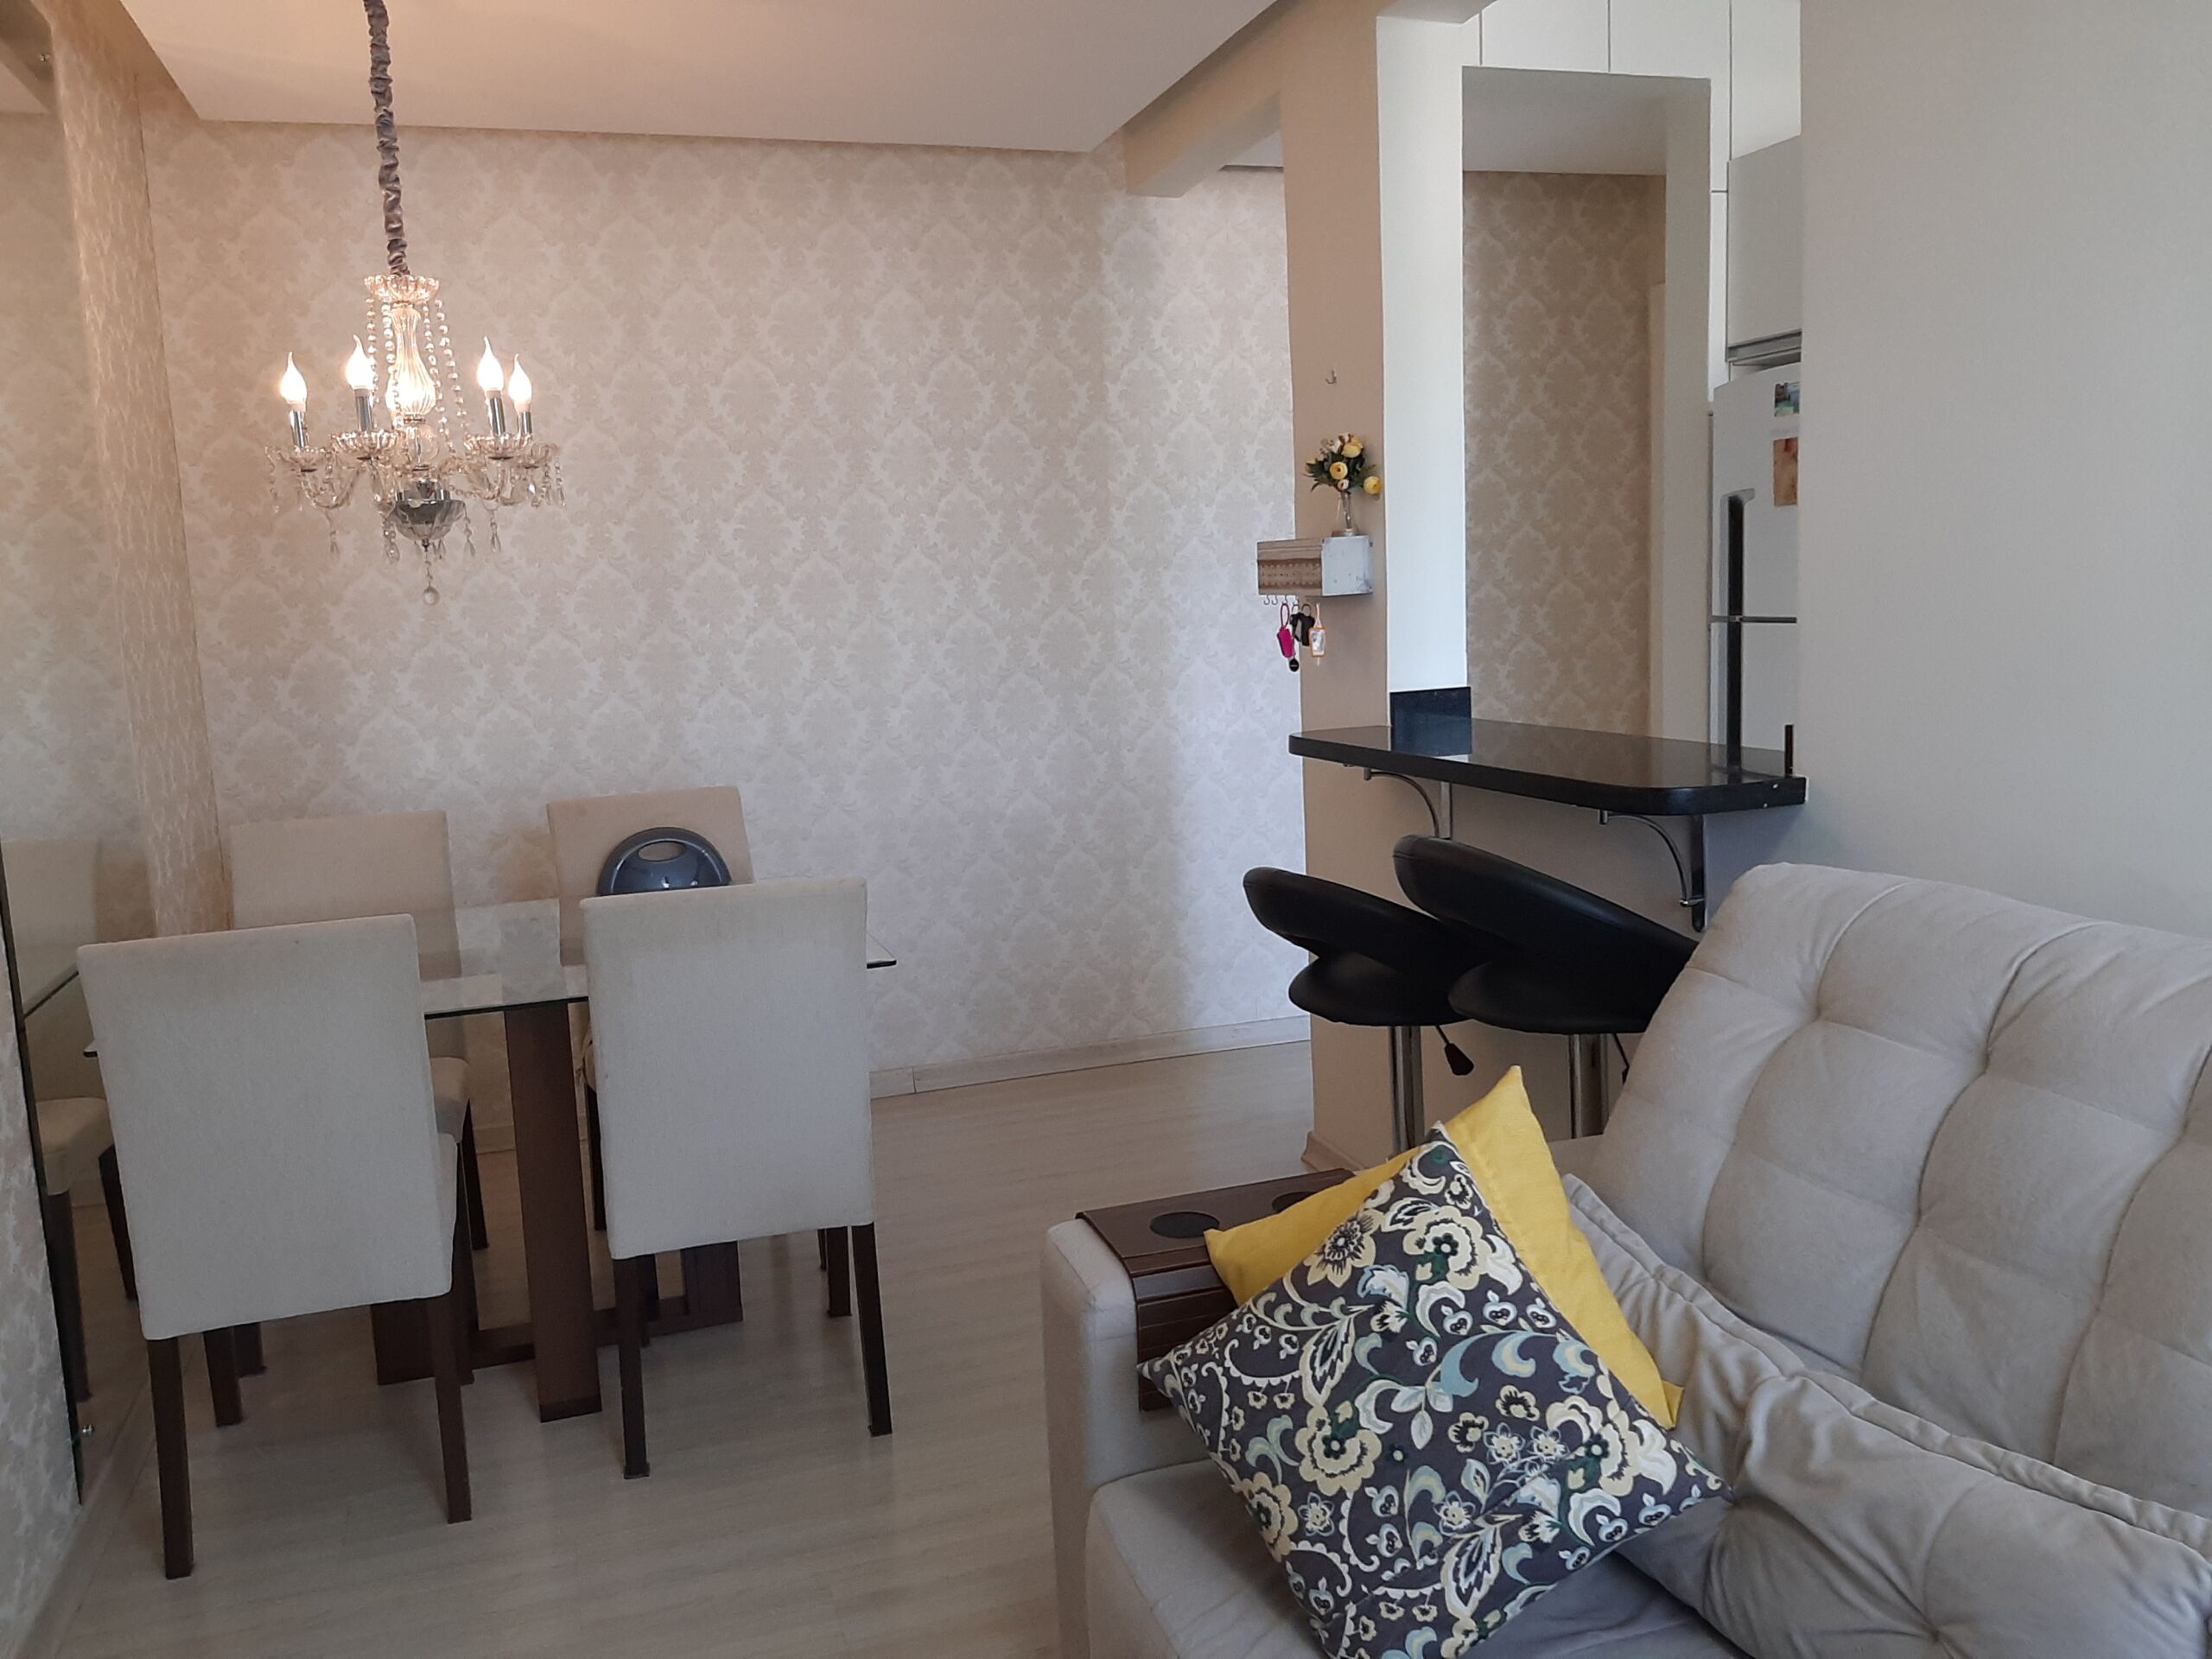 Apartamento – 3 dormitórios (1 suíte) – 1 vaga – semimobiliado – vista agradável – Costa e Silva